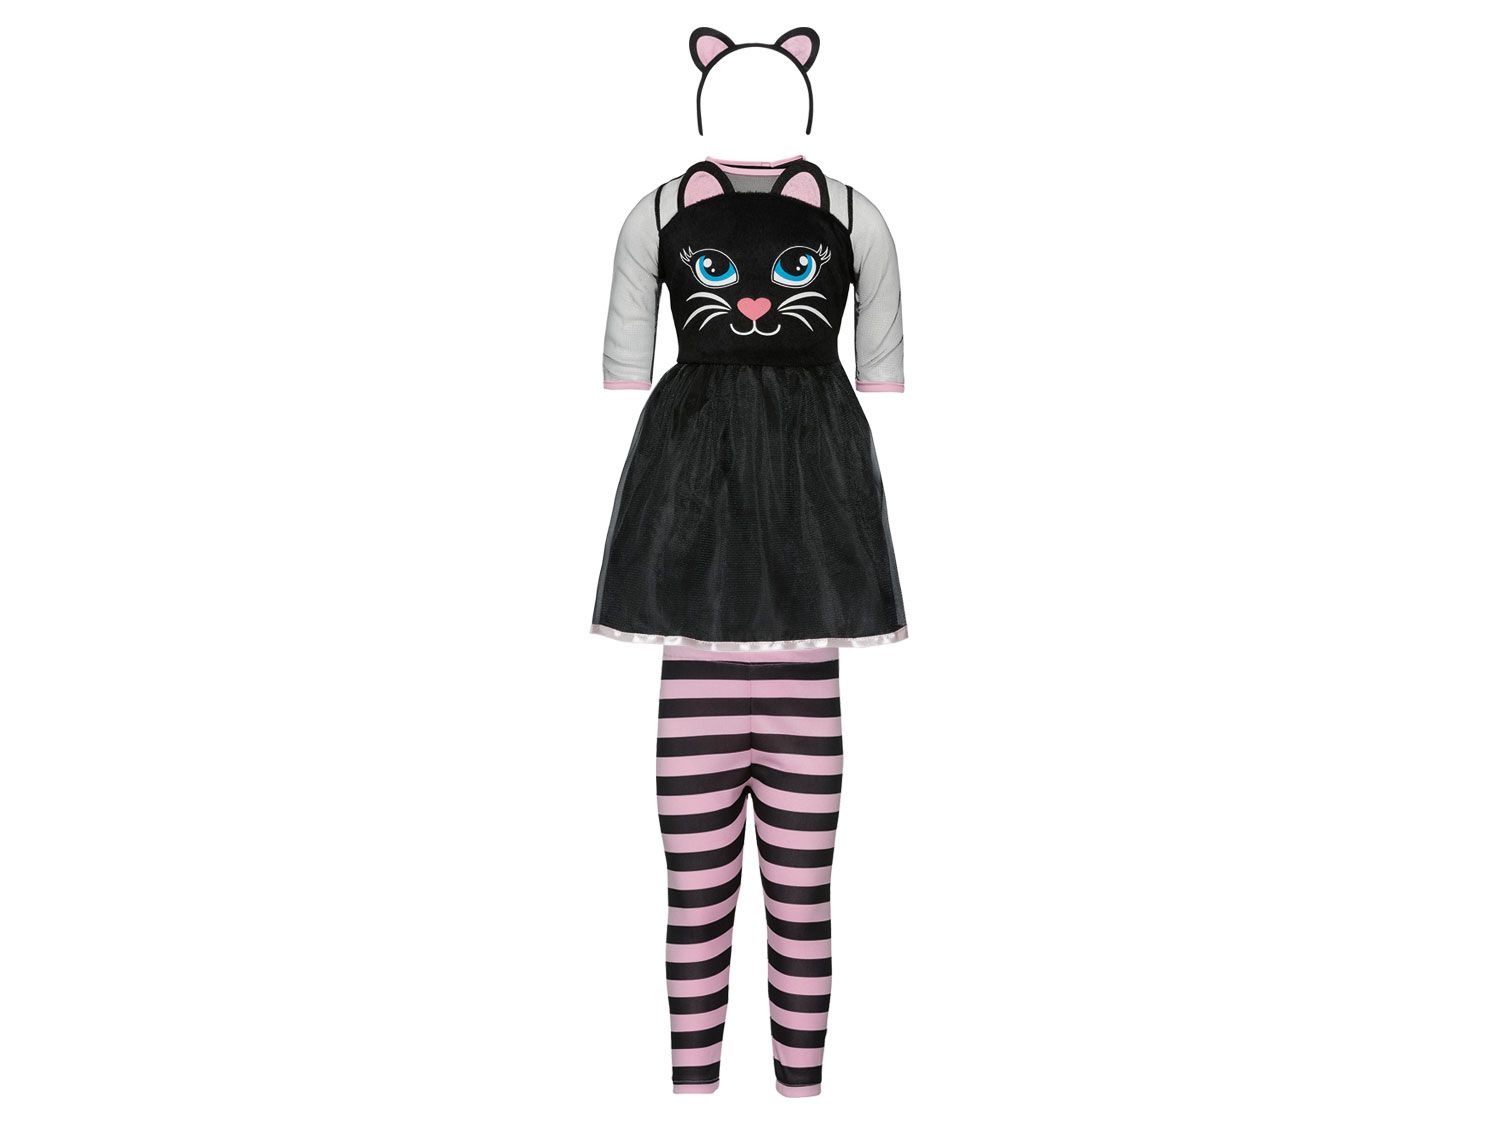 Aanvankelijk besluiten schijf Meisjes Halloween kostuum online kopen | LIDL